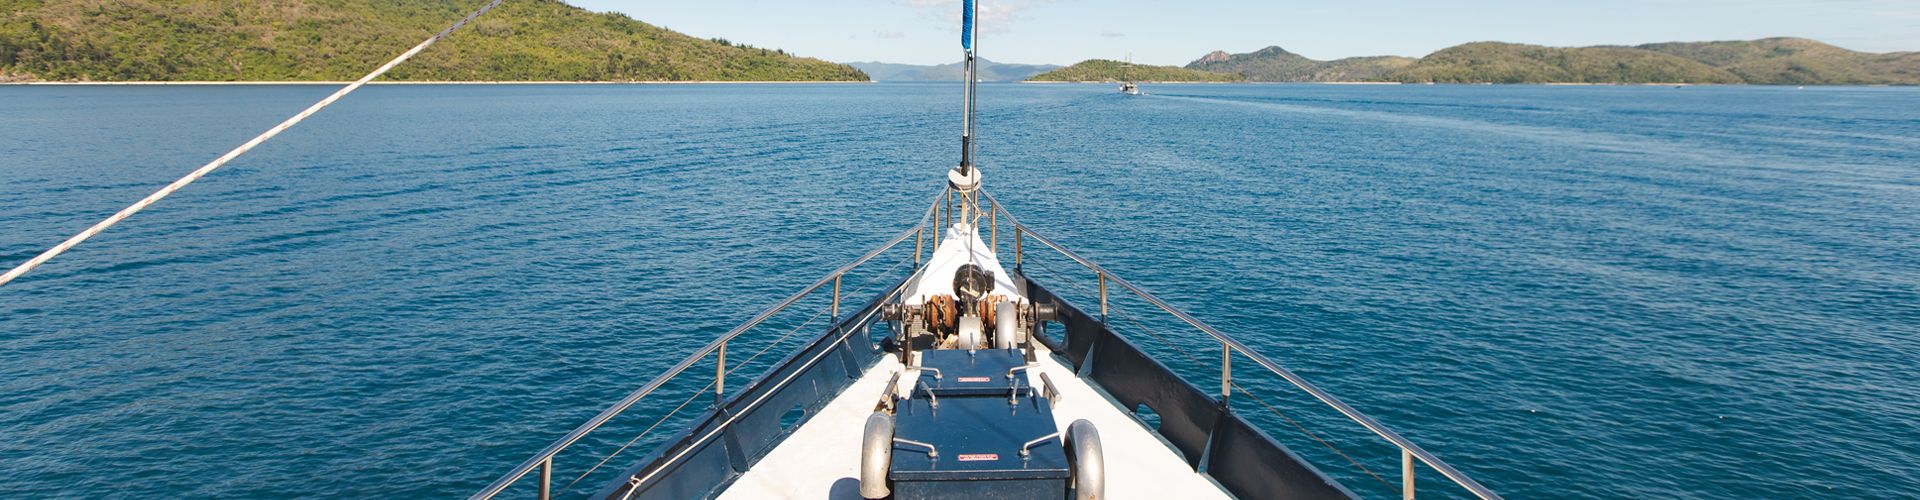 Overnight Tour Deals - Sailing Whitsunday Image